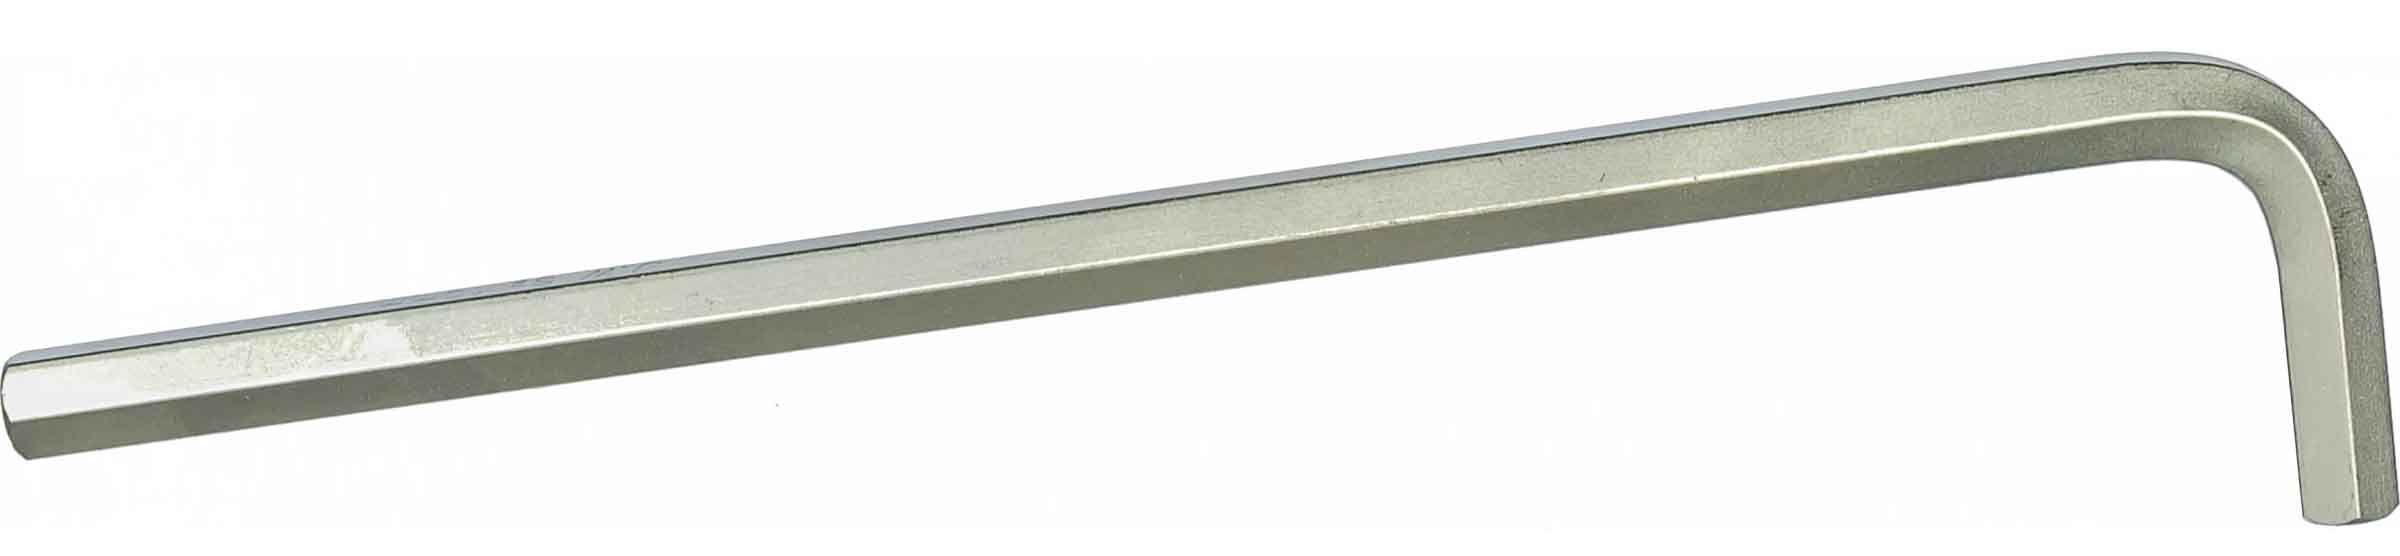 Комплект шестигранных ключей (1,5-10 мм) EXTRA LONG Jonnesway H03SM109S, 9 штук - фото